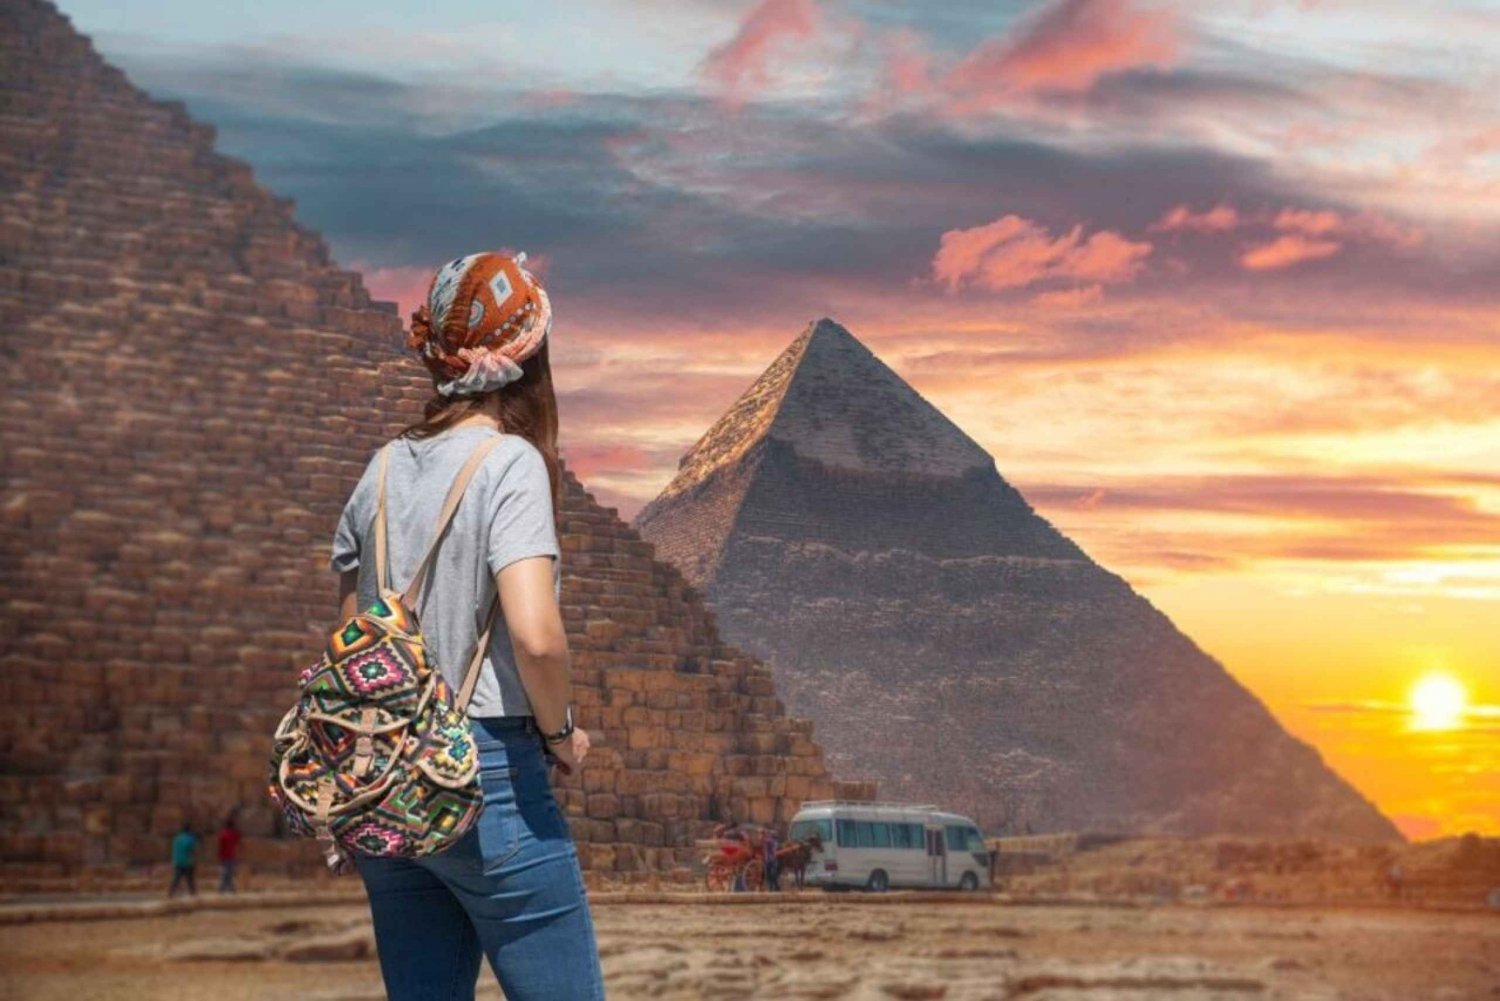 Sahl Hasheesh: Kairo und Gizeh Highlights Tagestour mit Mittagessen